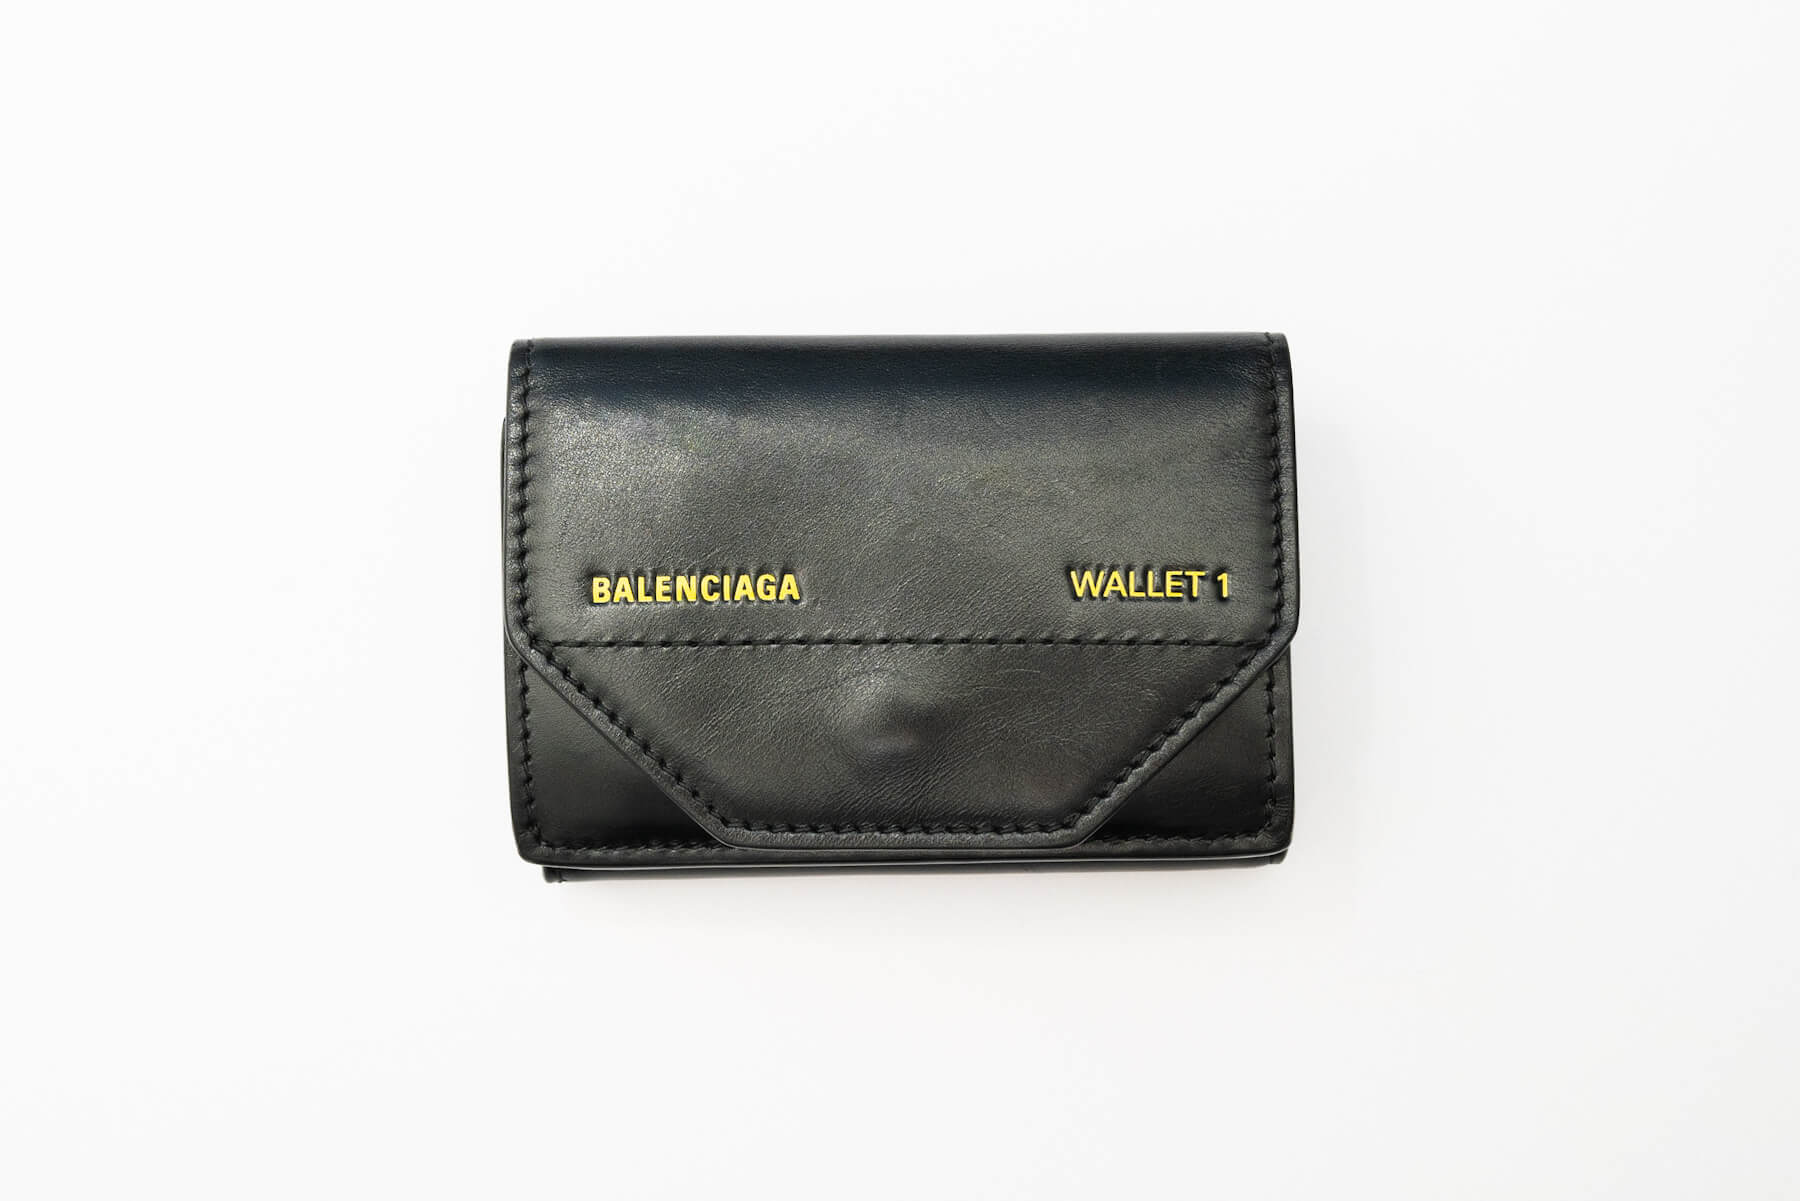 BALENCIAGAの小さい財布に一目惚れ。日本未発売モデル「ETUI 